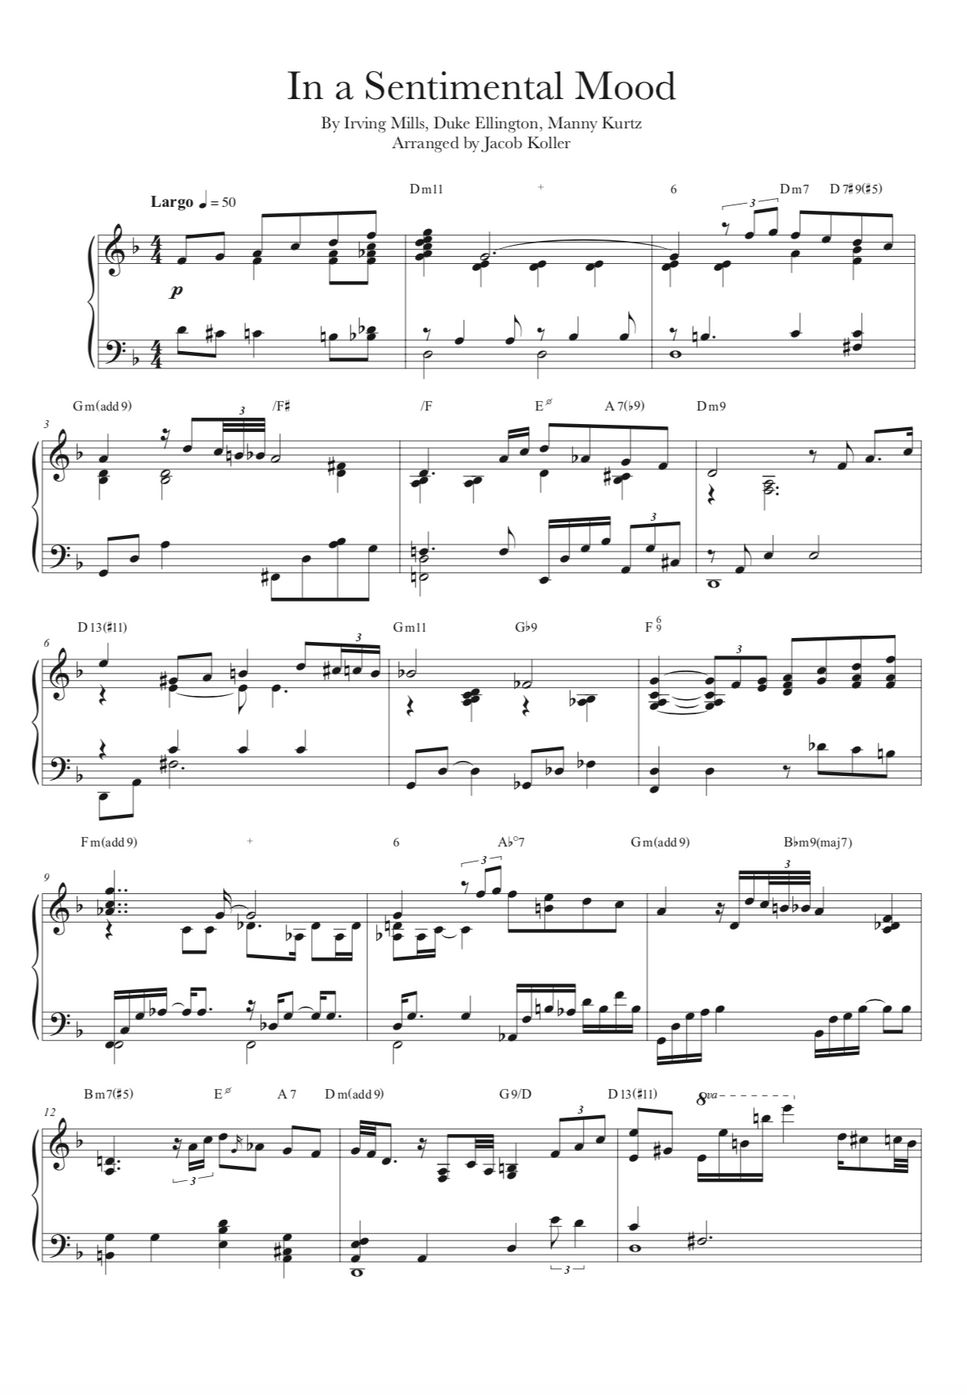 Duke Ellington - In a Sentimental Mood by Jacob Koller